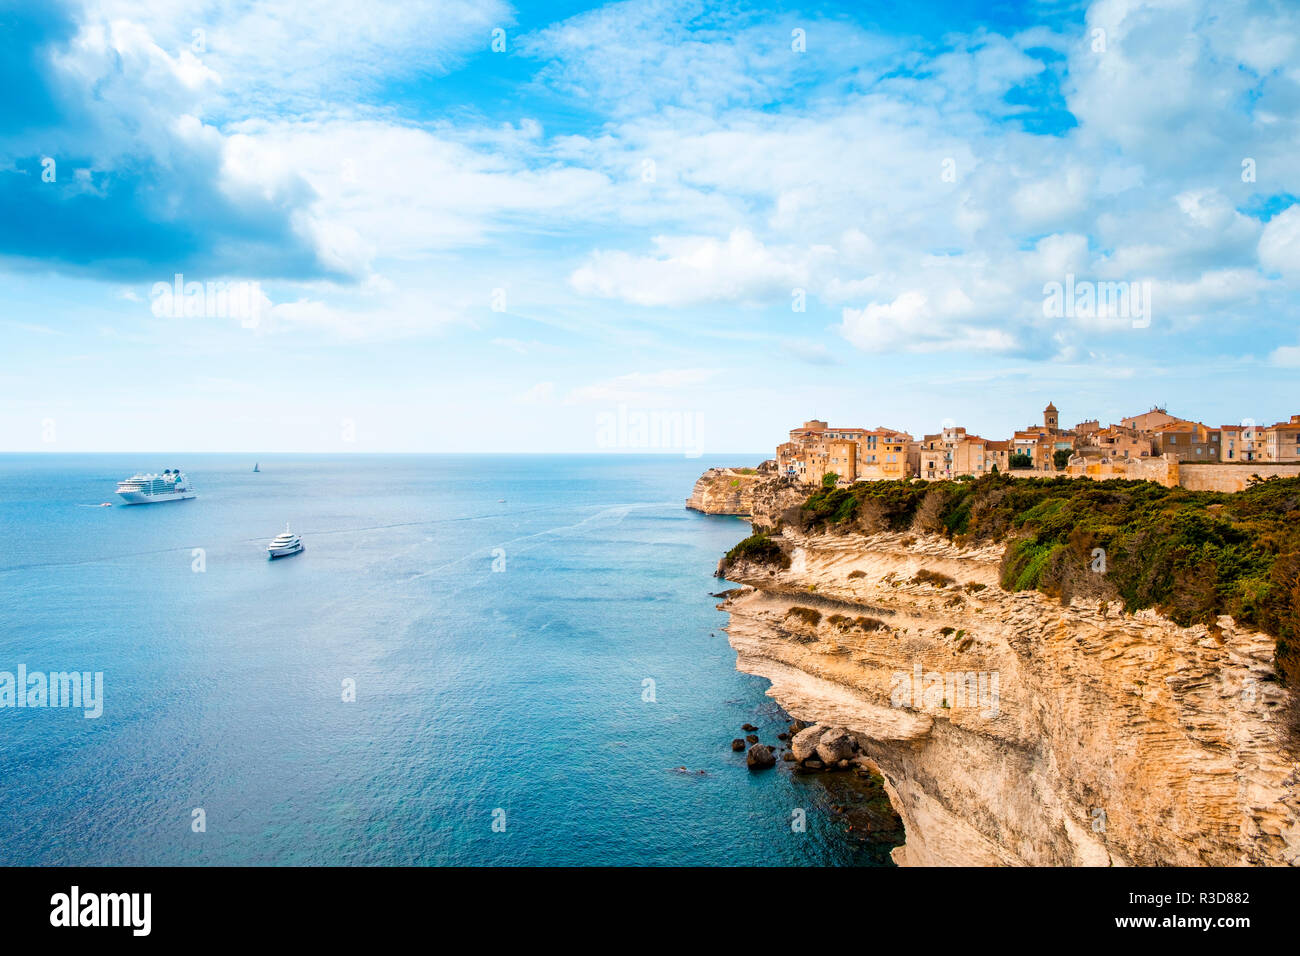 Ein Blick auf die malerische Ville Haute, die Altstadt von Bonifacio, Korsika, Frankreich, oben auf einem Felsen über dem Mittelmeer Stockfoto